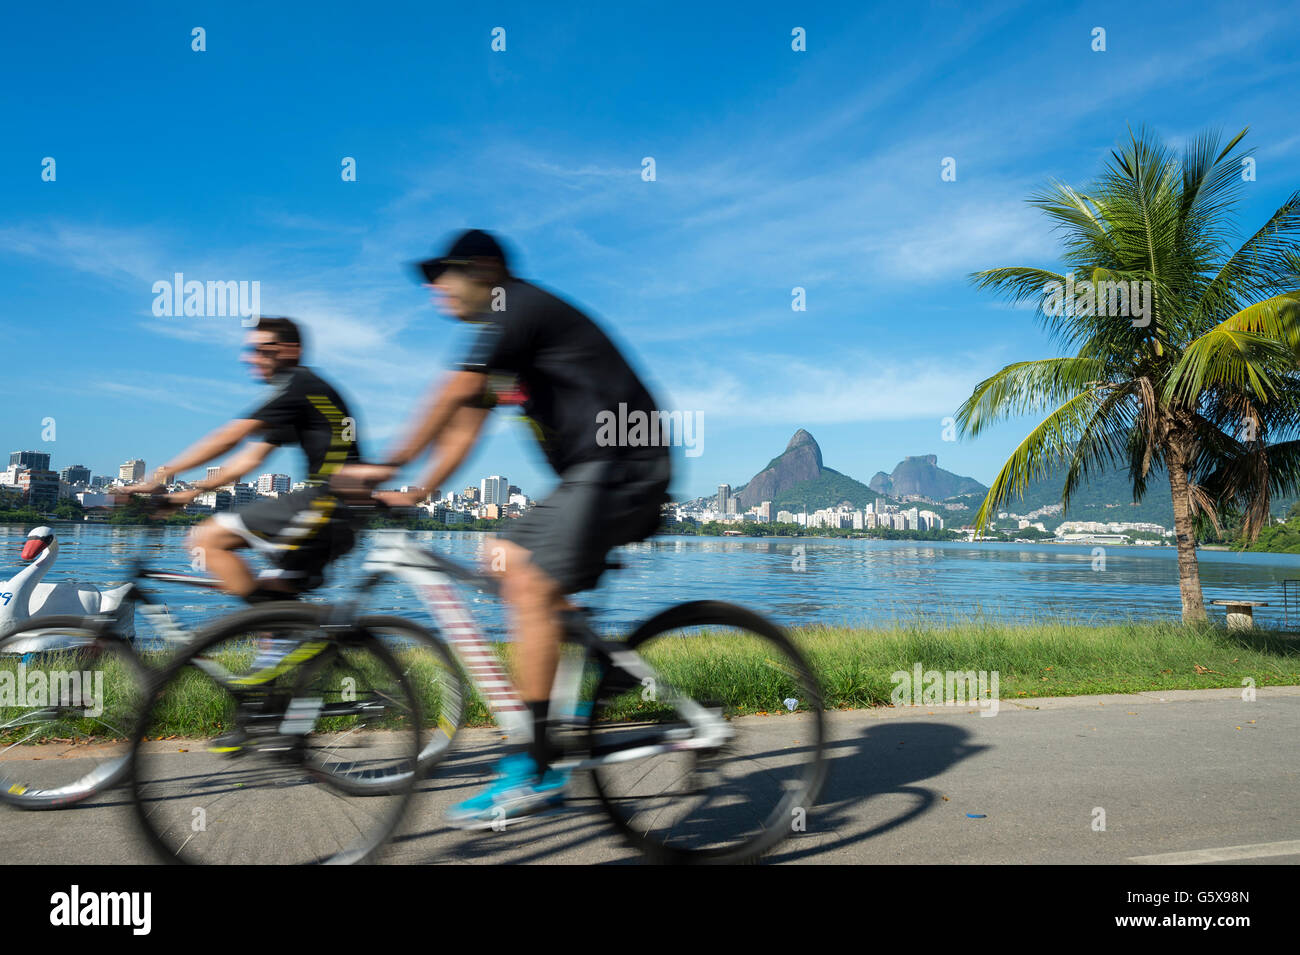 RIO DE JANEIRO - Gennaio 31, 2016: I ciclisti passano in motion blur contro una calma vista la mattina di Lagoa Rodrigo de Freitas. Foto Stock